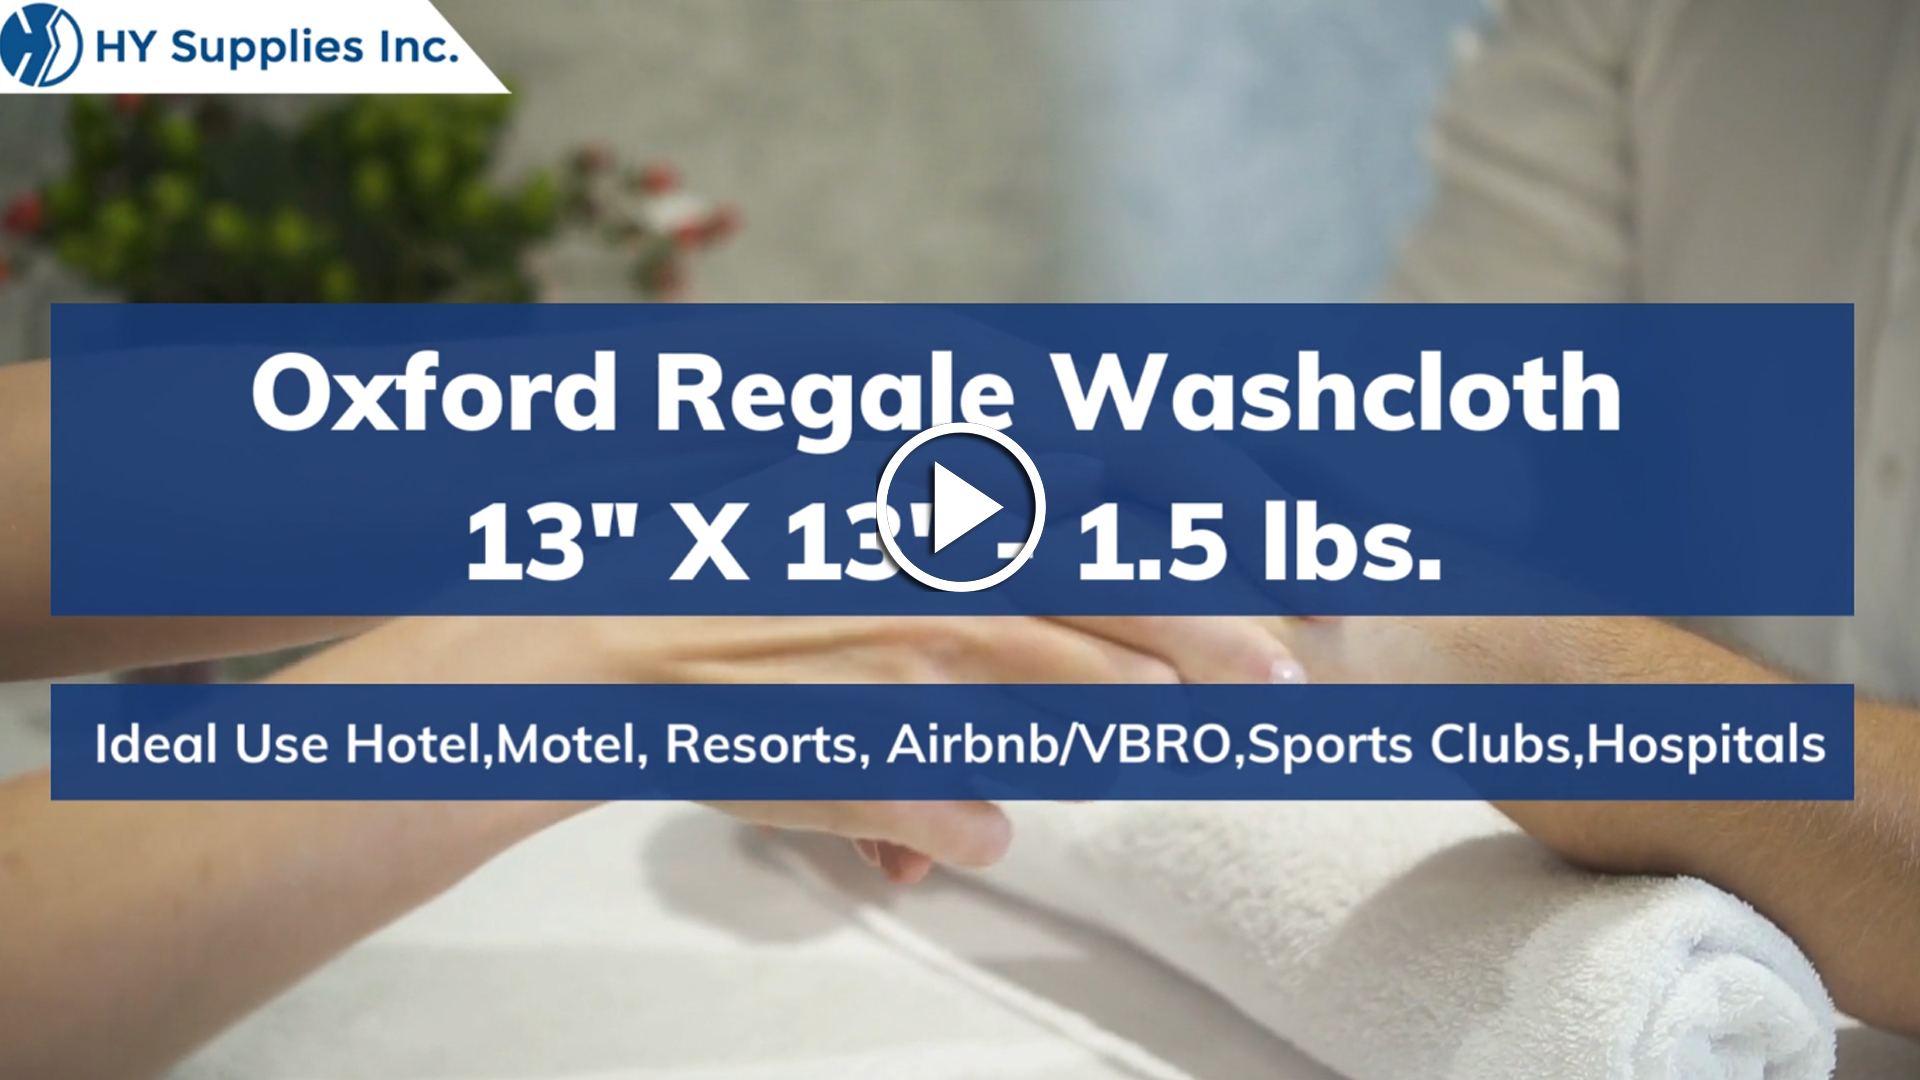 Oxford Regale Washcloth - 13" X13" - 1.5 lbs.